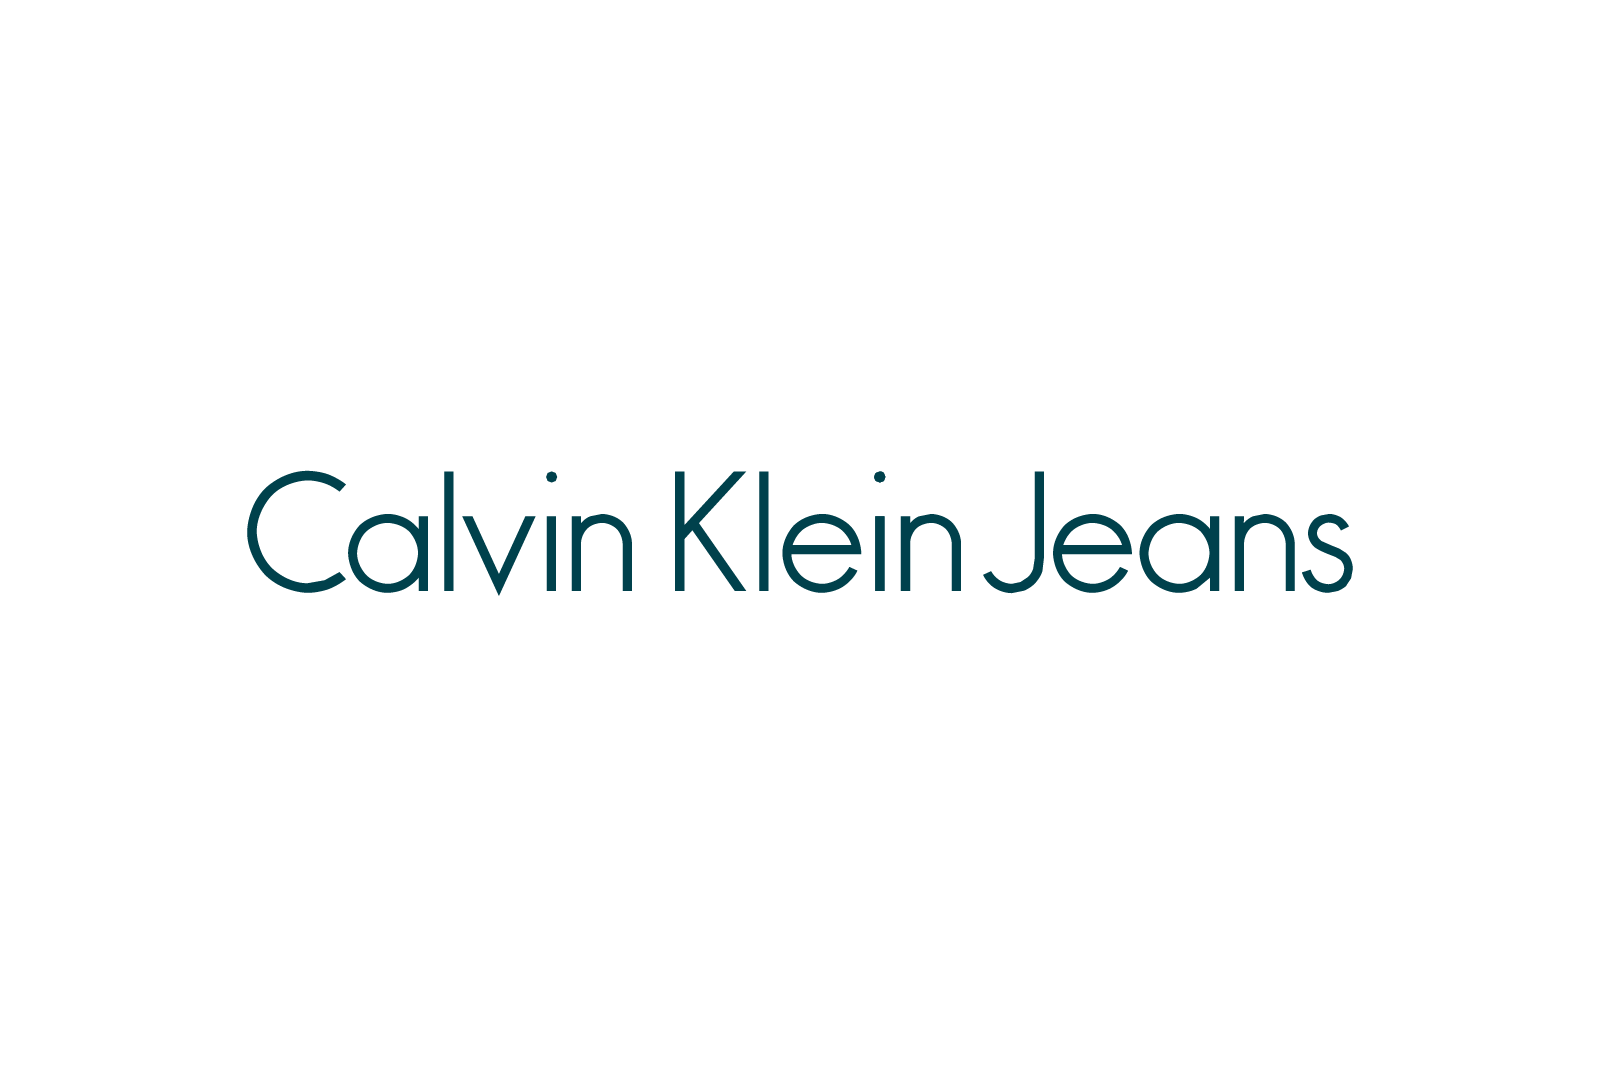  Logo Calvin Klein Jeans 